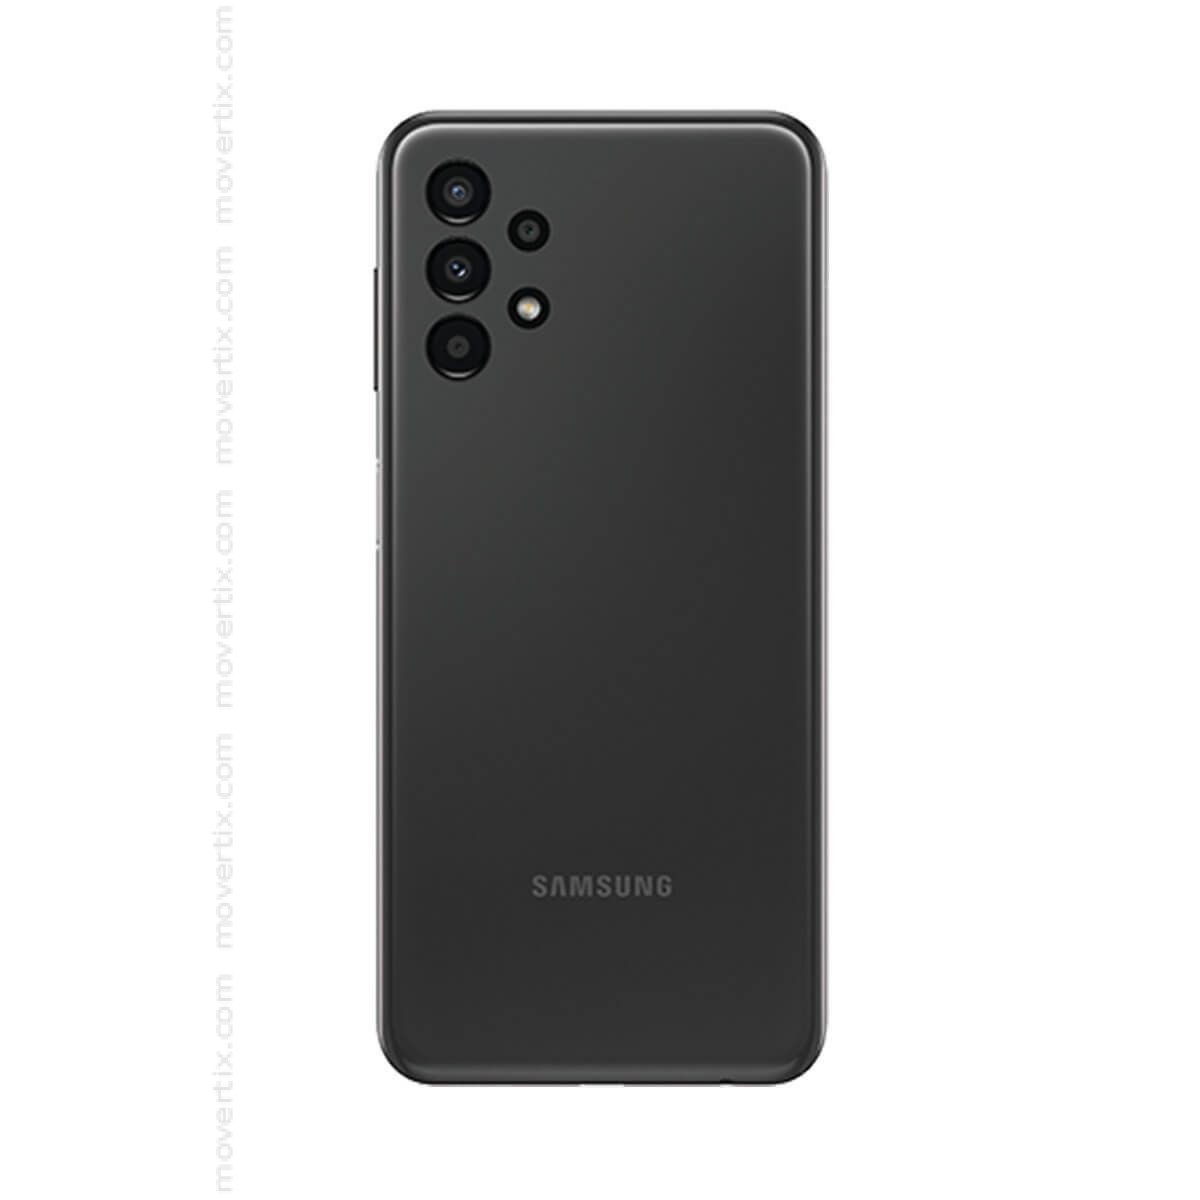 los arrebatar fibra Samsung Galaxy A13 Dual SIM Black 32GB and 3GB RAM - SM-A135F/DS  (8806094516616) | Movertix Mobile Phones Shop